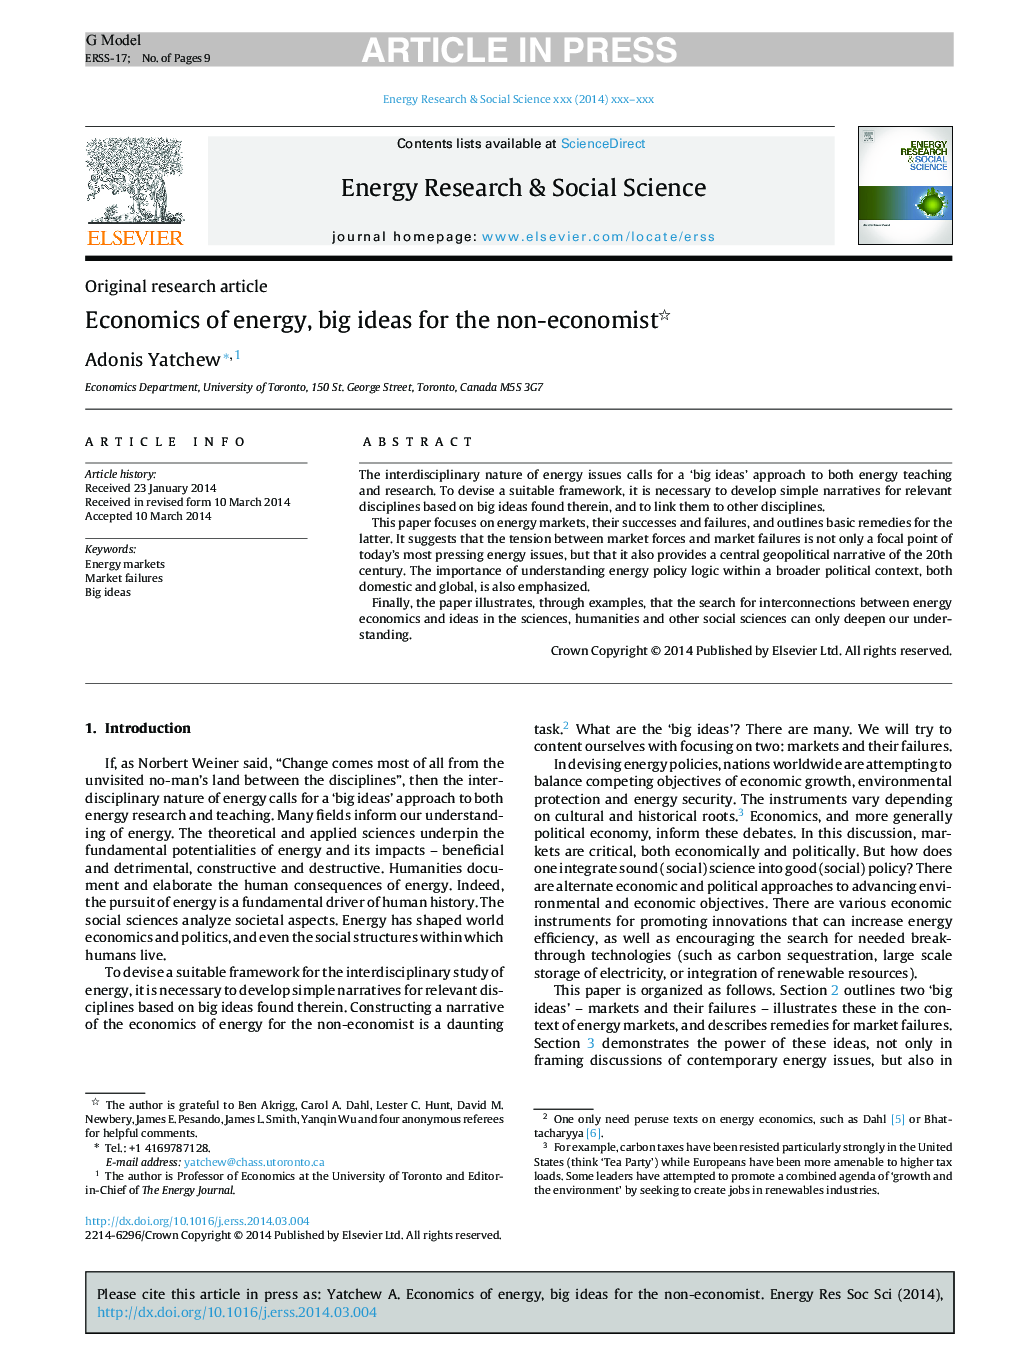 Economics of energy, big ideas for the non-economist